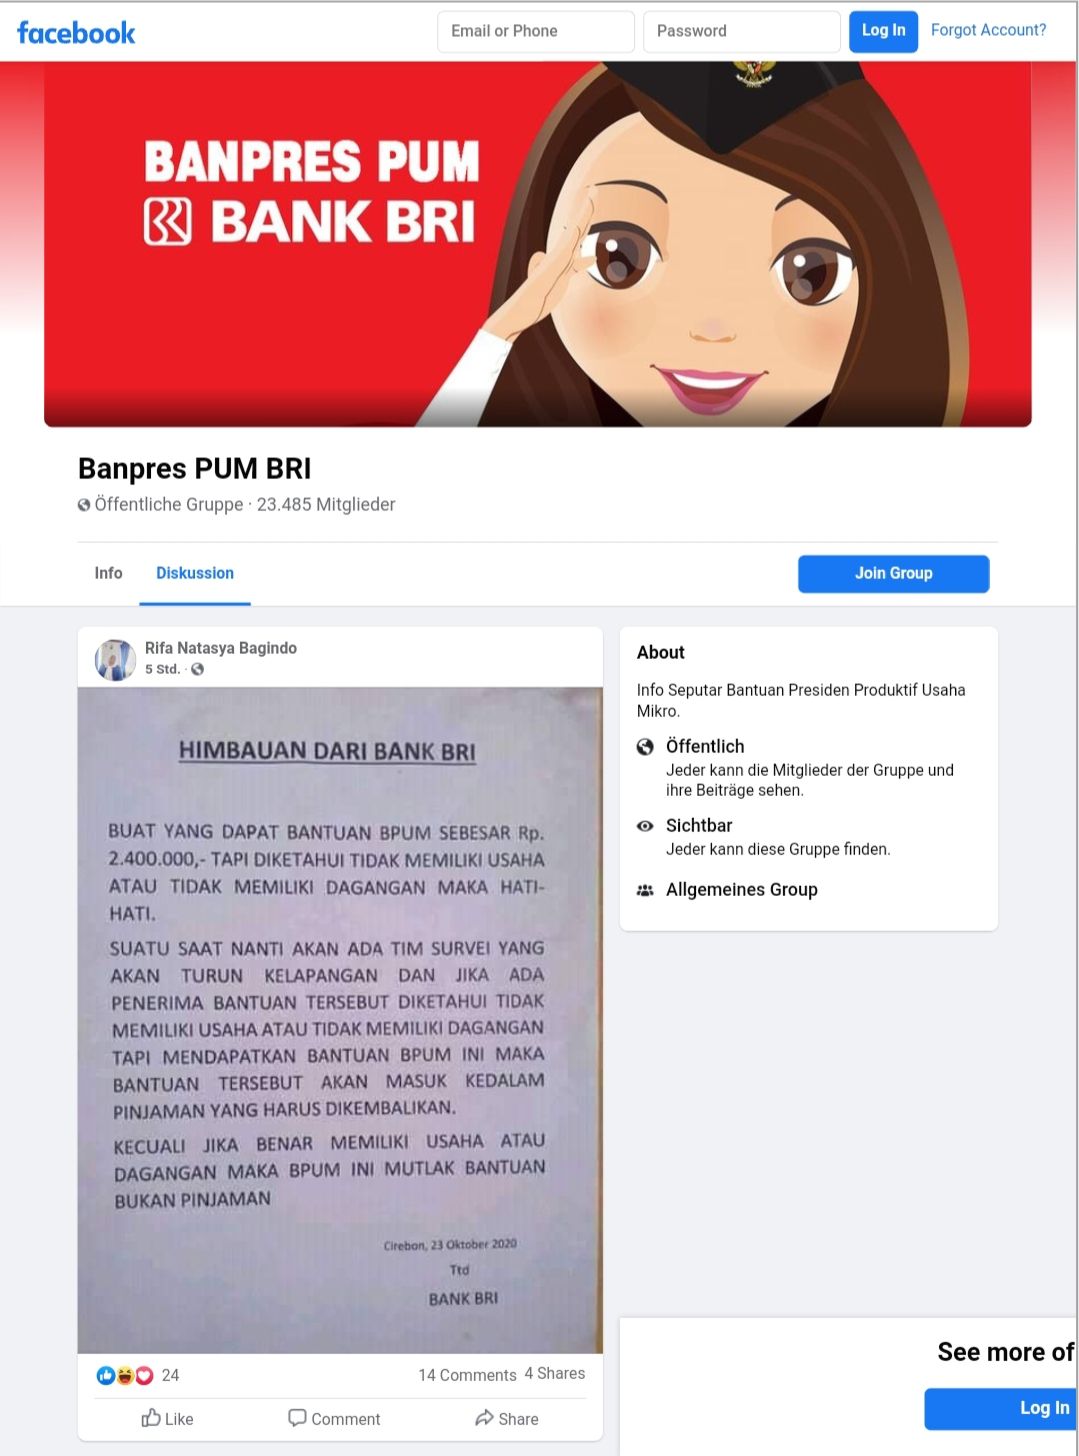 Tangkapan layar postingan himbauan dari Bank BRI